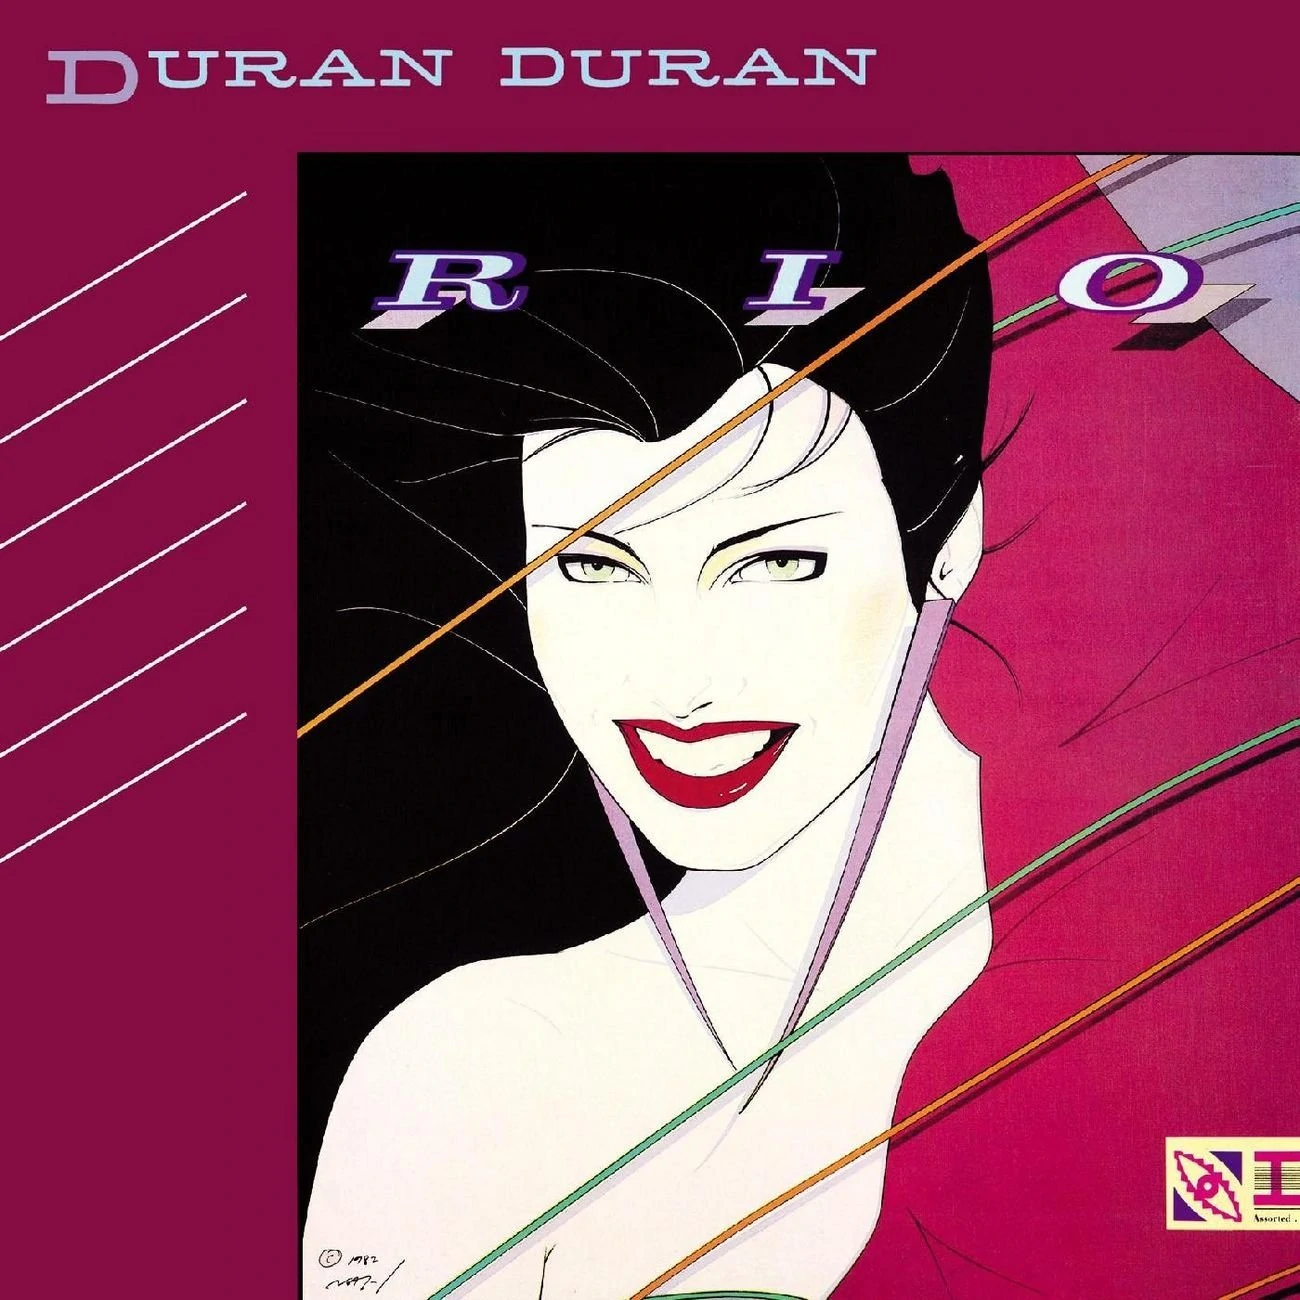 Duran Duran — The Chauffeur cover artwork